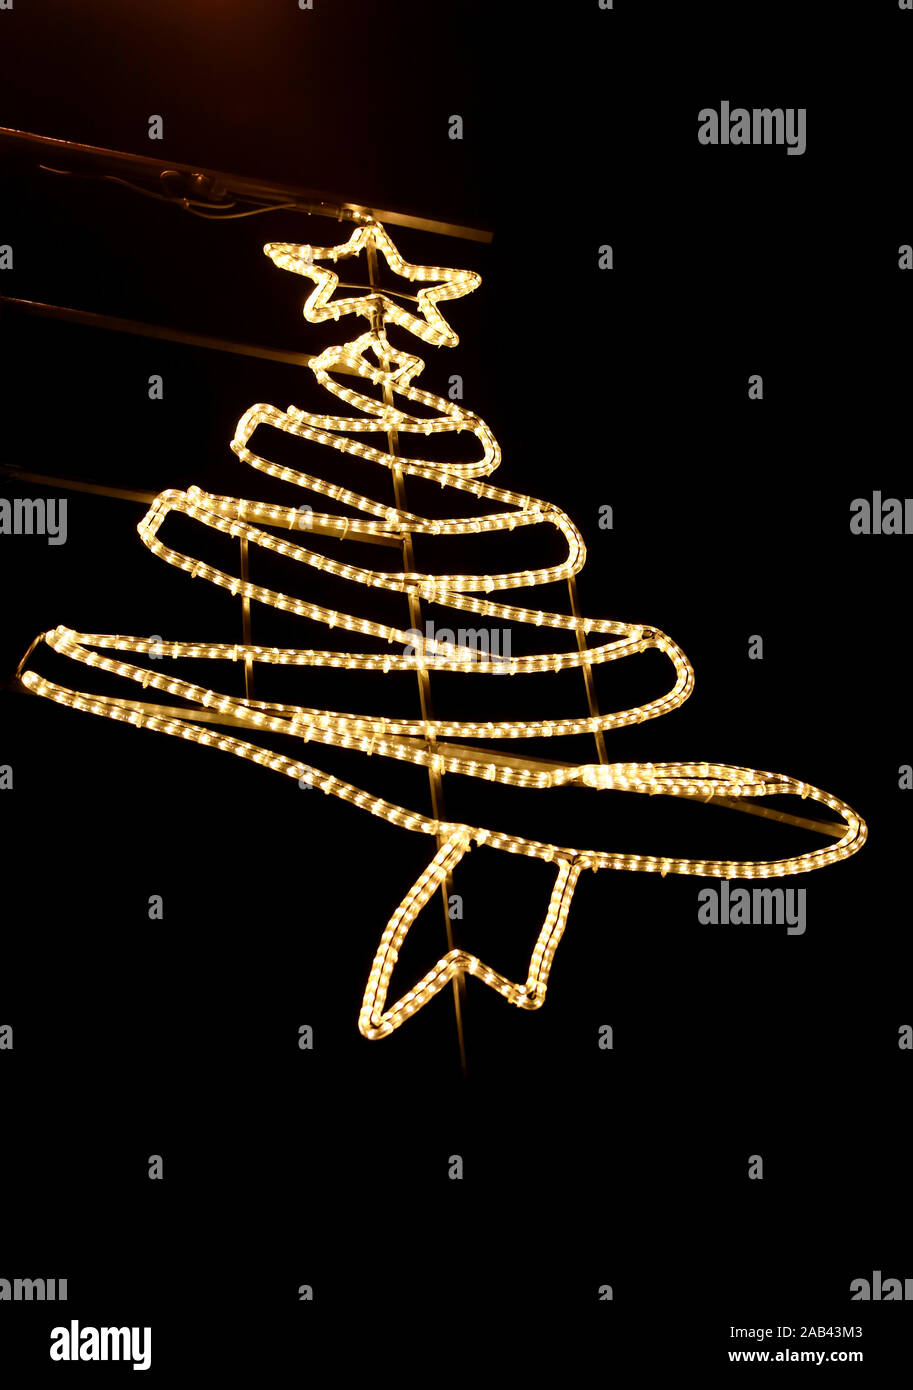 Straße Neues Jahr und Weihnachtsschmuck, string Reis Glühlampen. Dekorative blinkende Lichter, Ornamente geformt von Baum und Stern auf die Oberseite zu Weihnachten Stockfoto